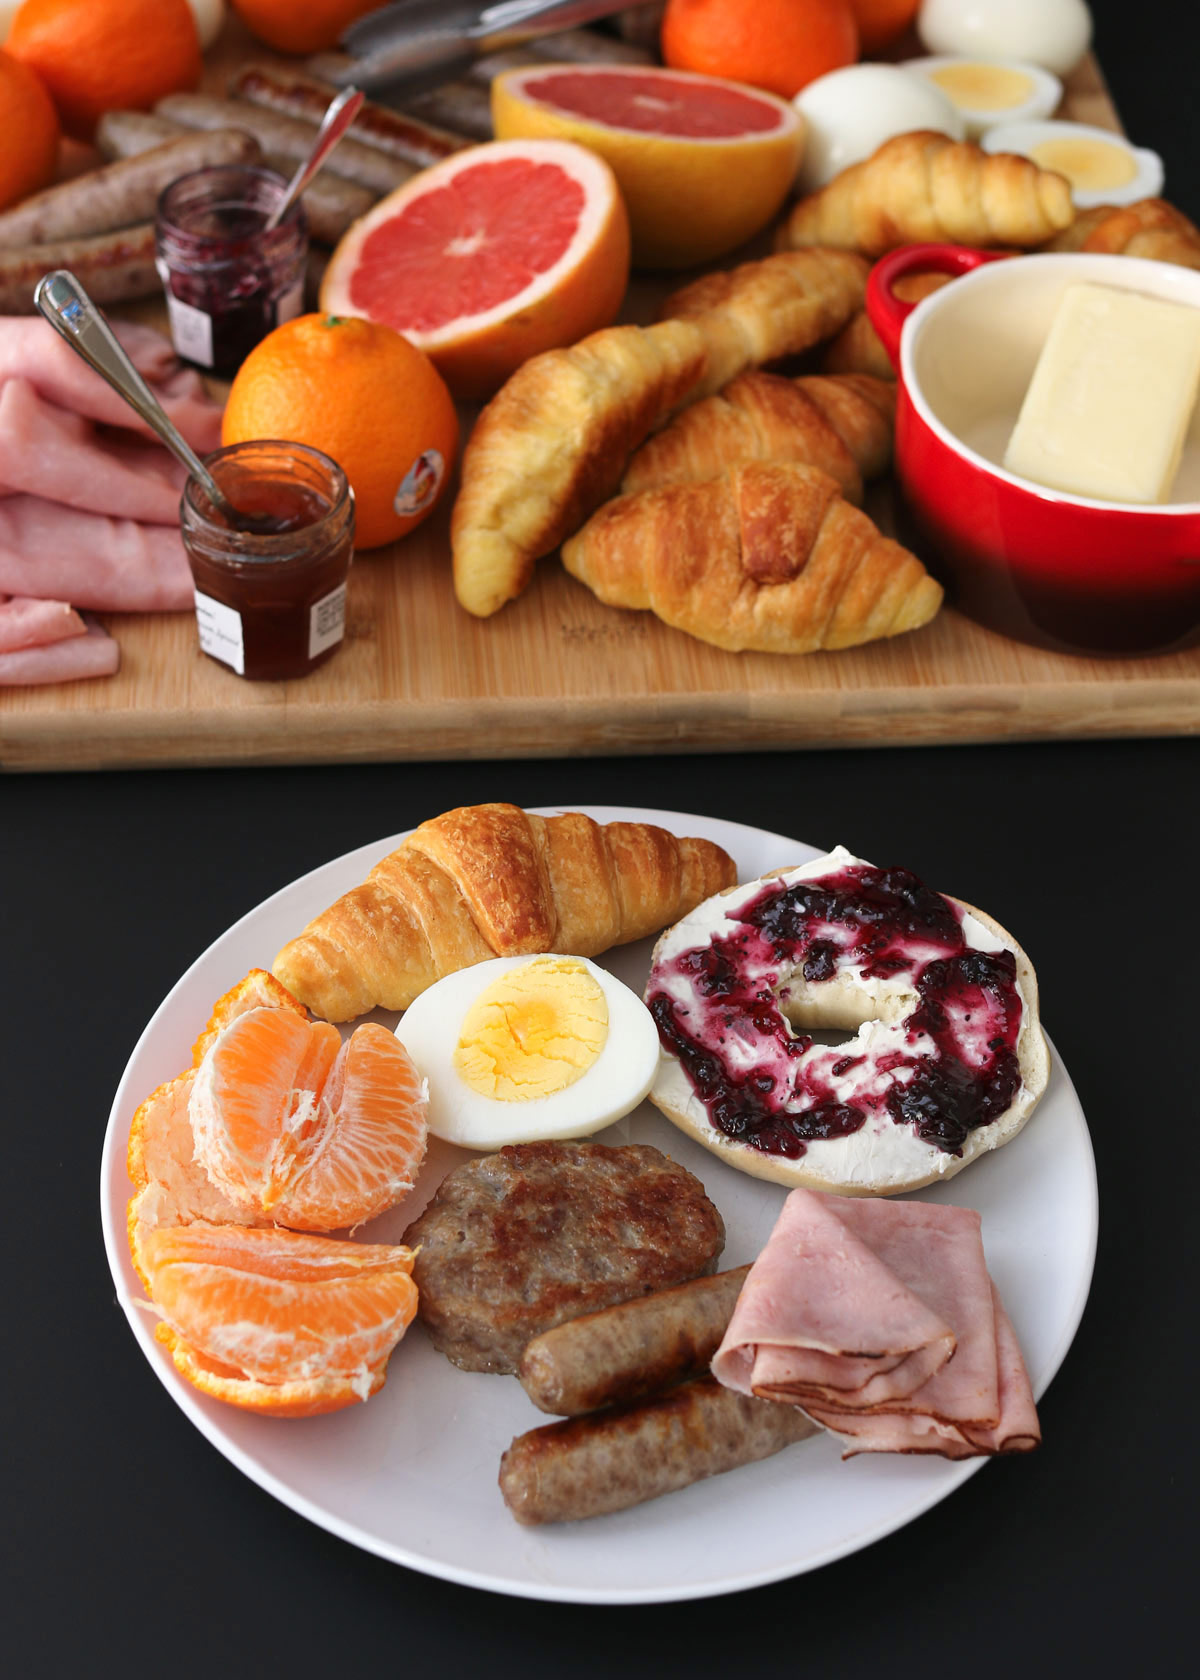 breakfast plate on table near larger breakfast charcuterie board.